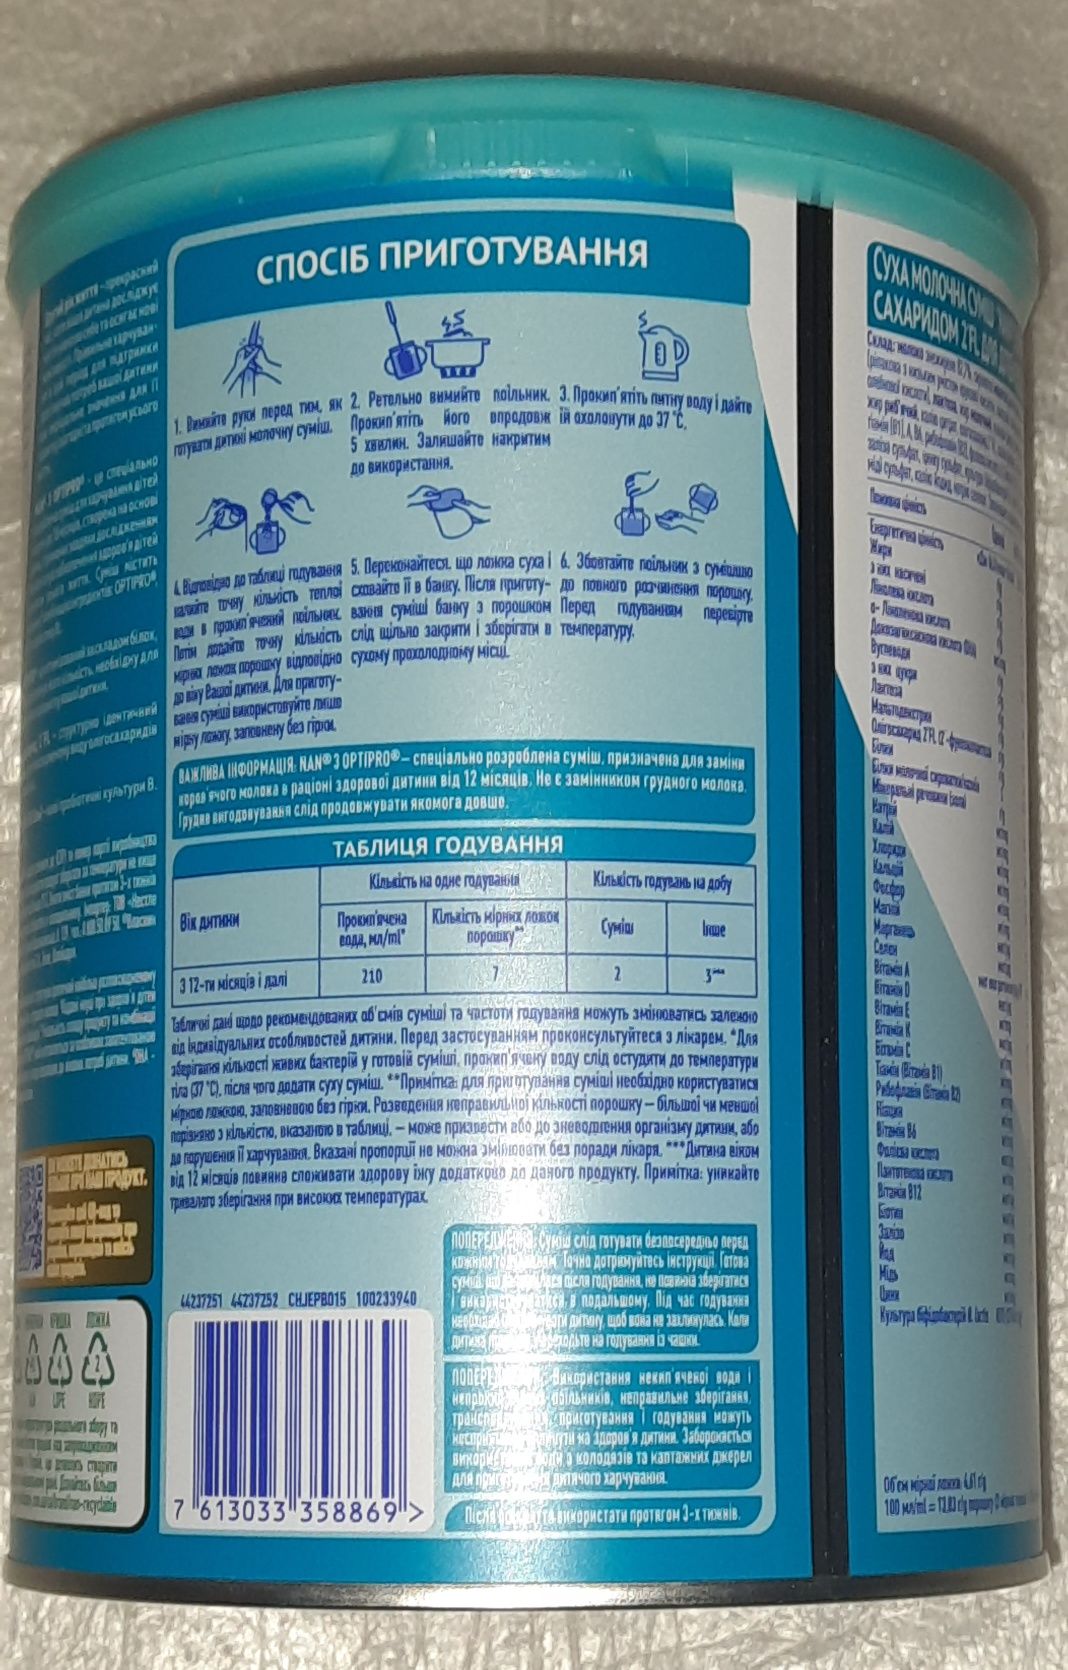 Суха молочна суміш Nestle NAN 3 Optipro, 800 г